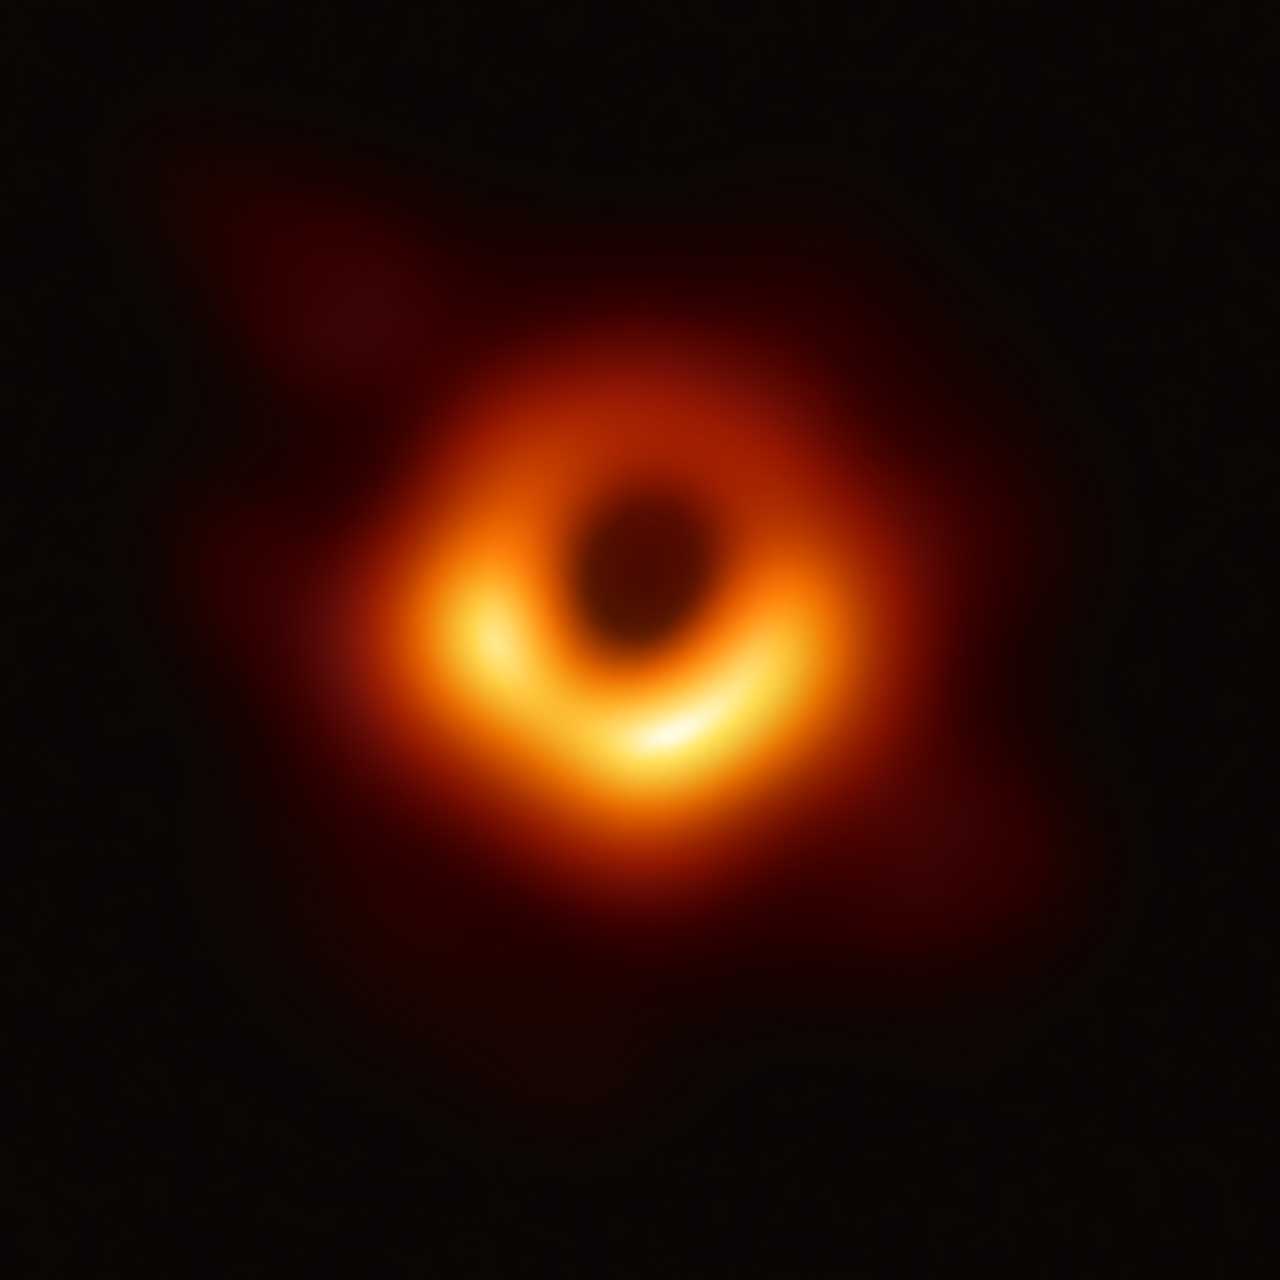 Aus Radioaufnahmen des Event Horizon Telescope berechnete Darstellung, die das supermassereiche Schwarze Loch der Galaxie M87 zeigt. Die schwarze Scheibe in der Bildmitte ist etwa 2,5-mal so groß wie der Ereignishorizont (Schwarzschild-Durchmesser ca. 38·1012 m) des supermassereichen Schwarzen Lochs im Zentrum.